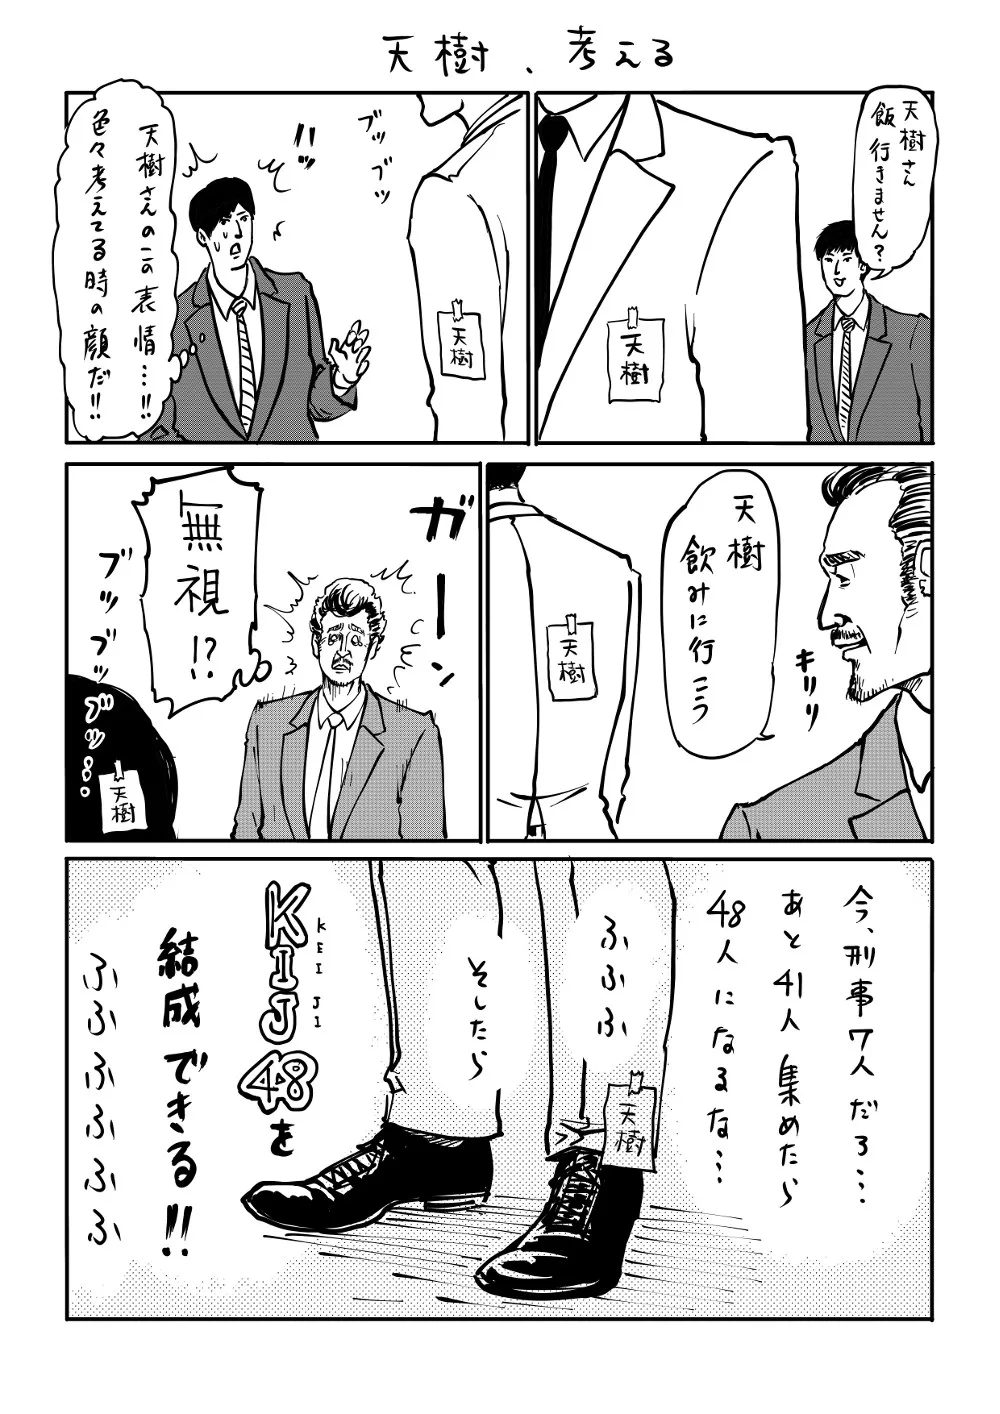 「刑事7人」オリジナル漫画がシュール過ぎる!?